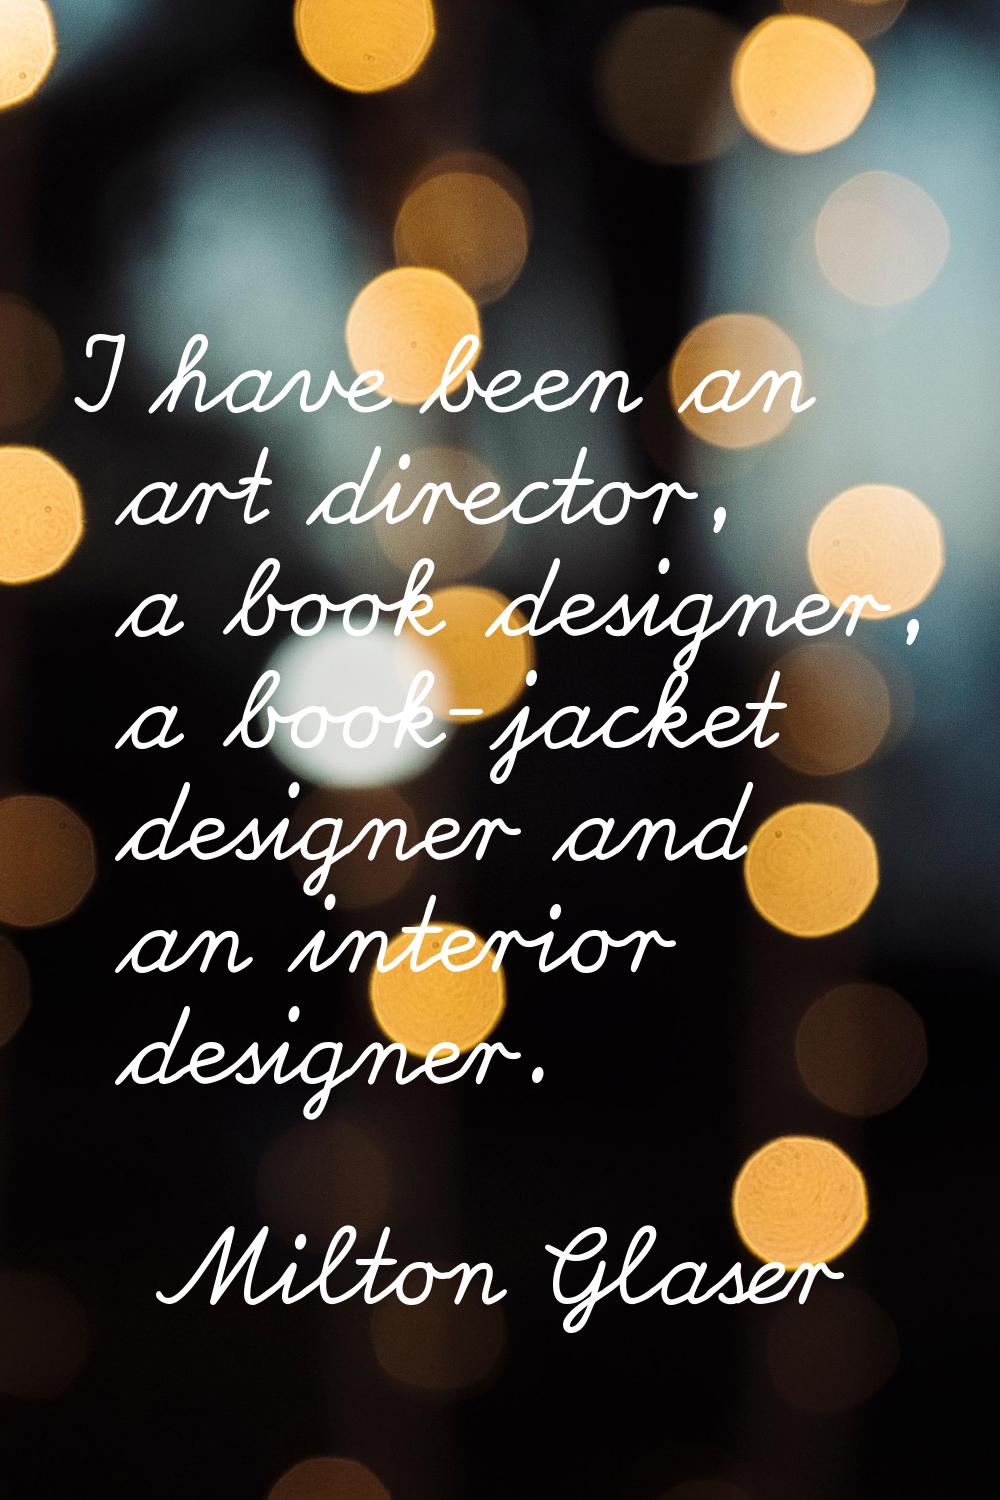 I have been an art director, a book designer, a book-jacket designer and an interior designer.